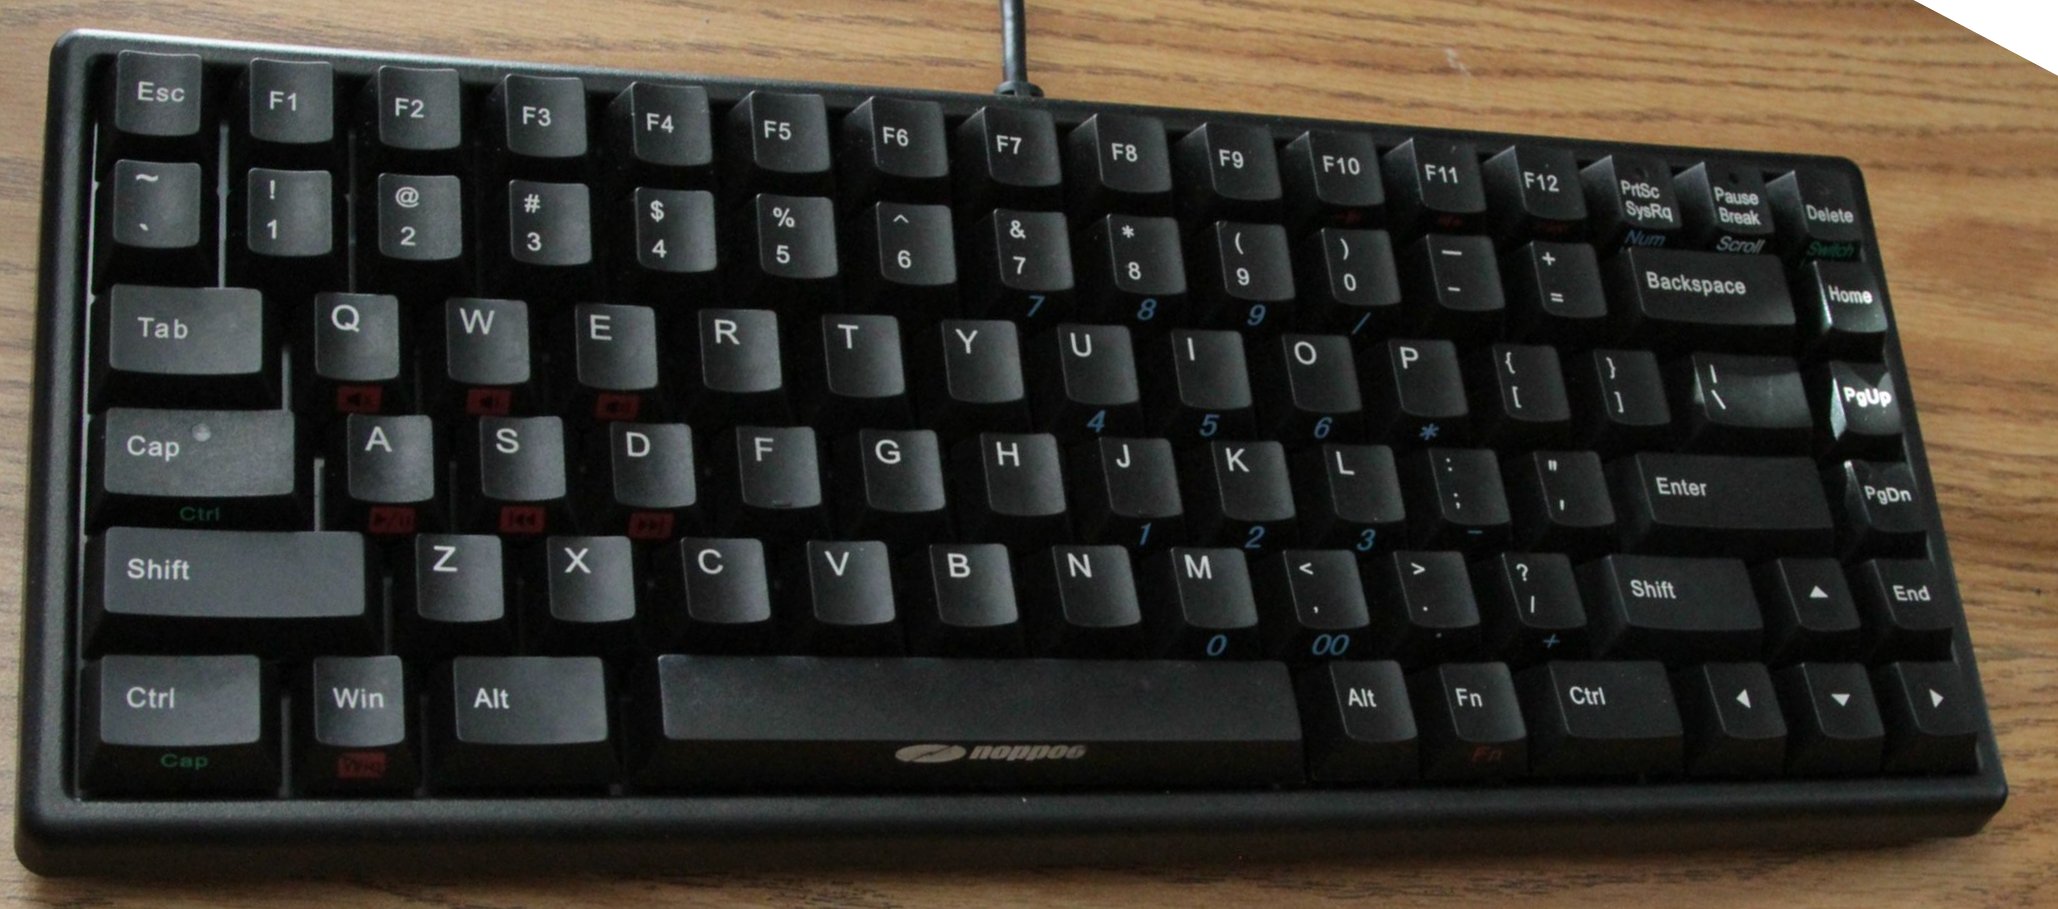 noppoo choc mini keyboard 48893